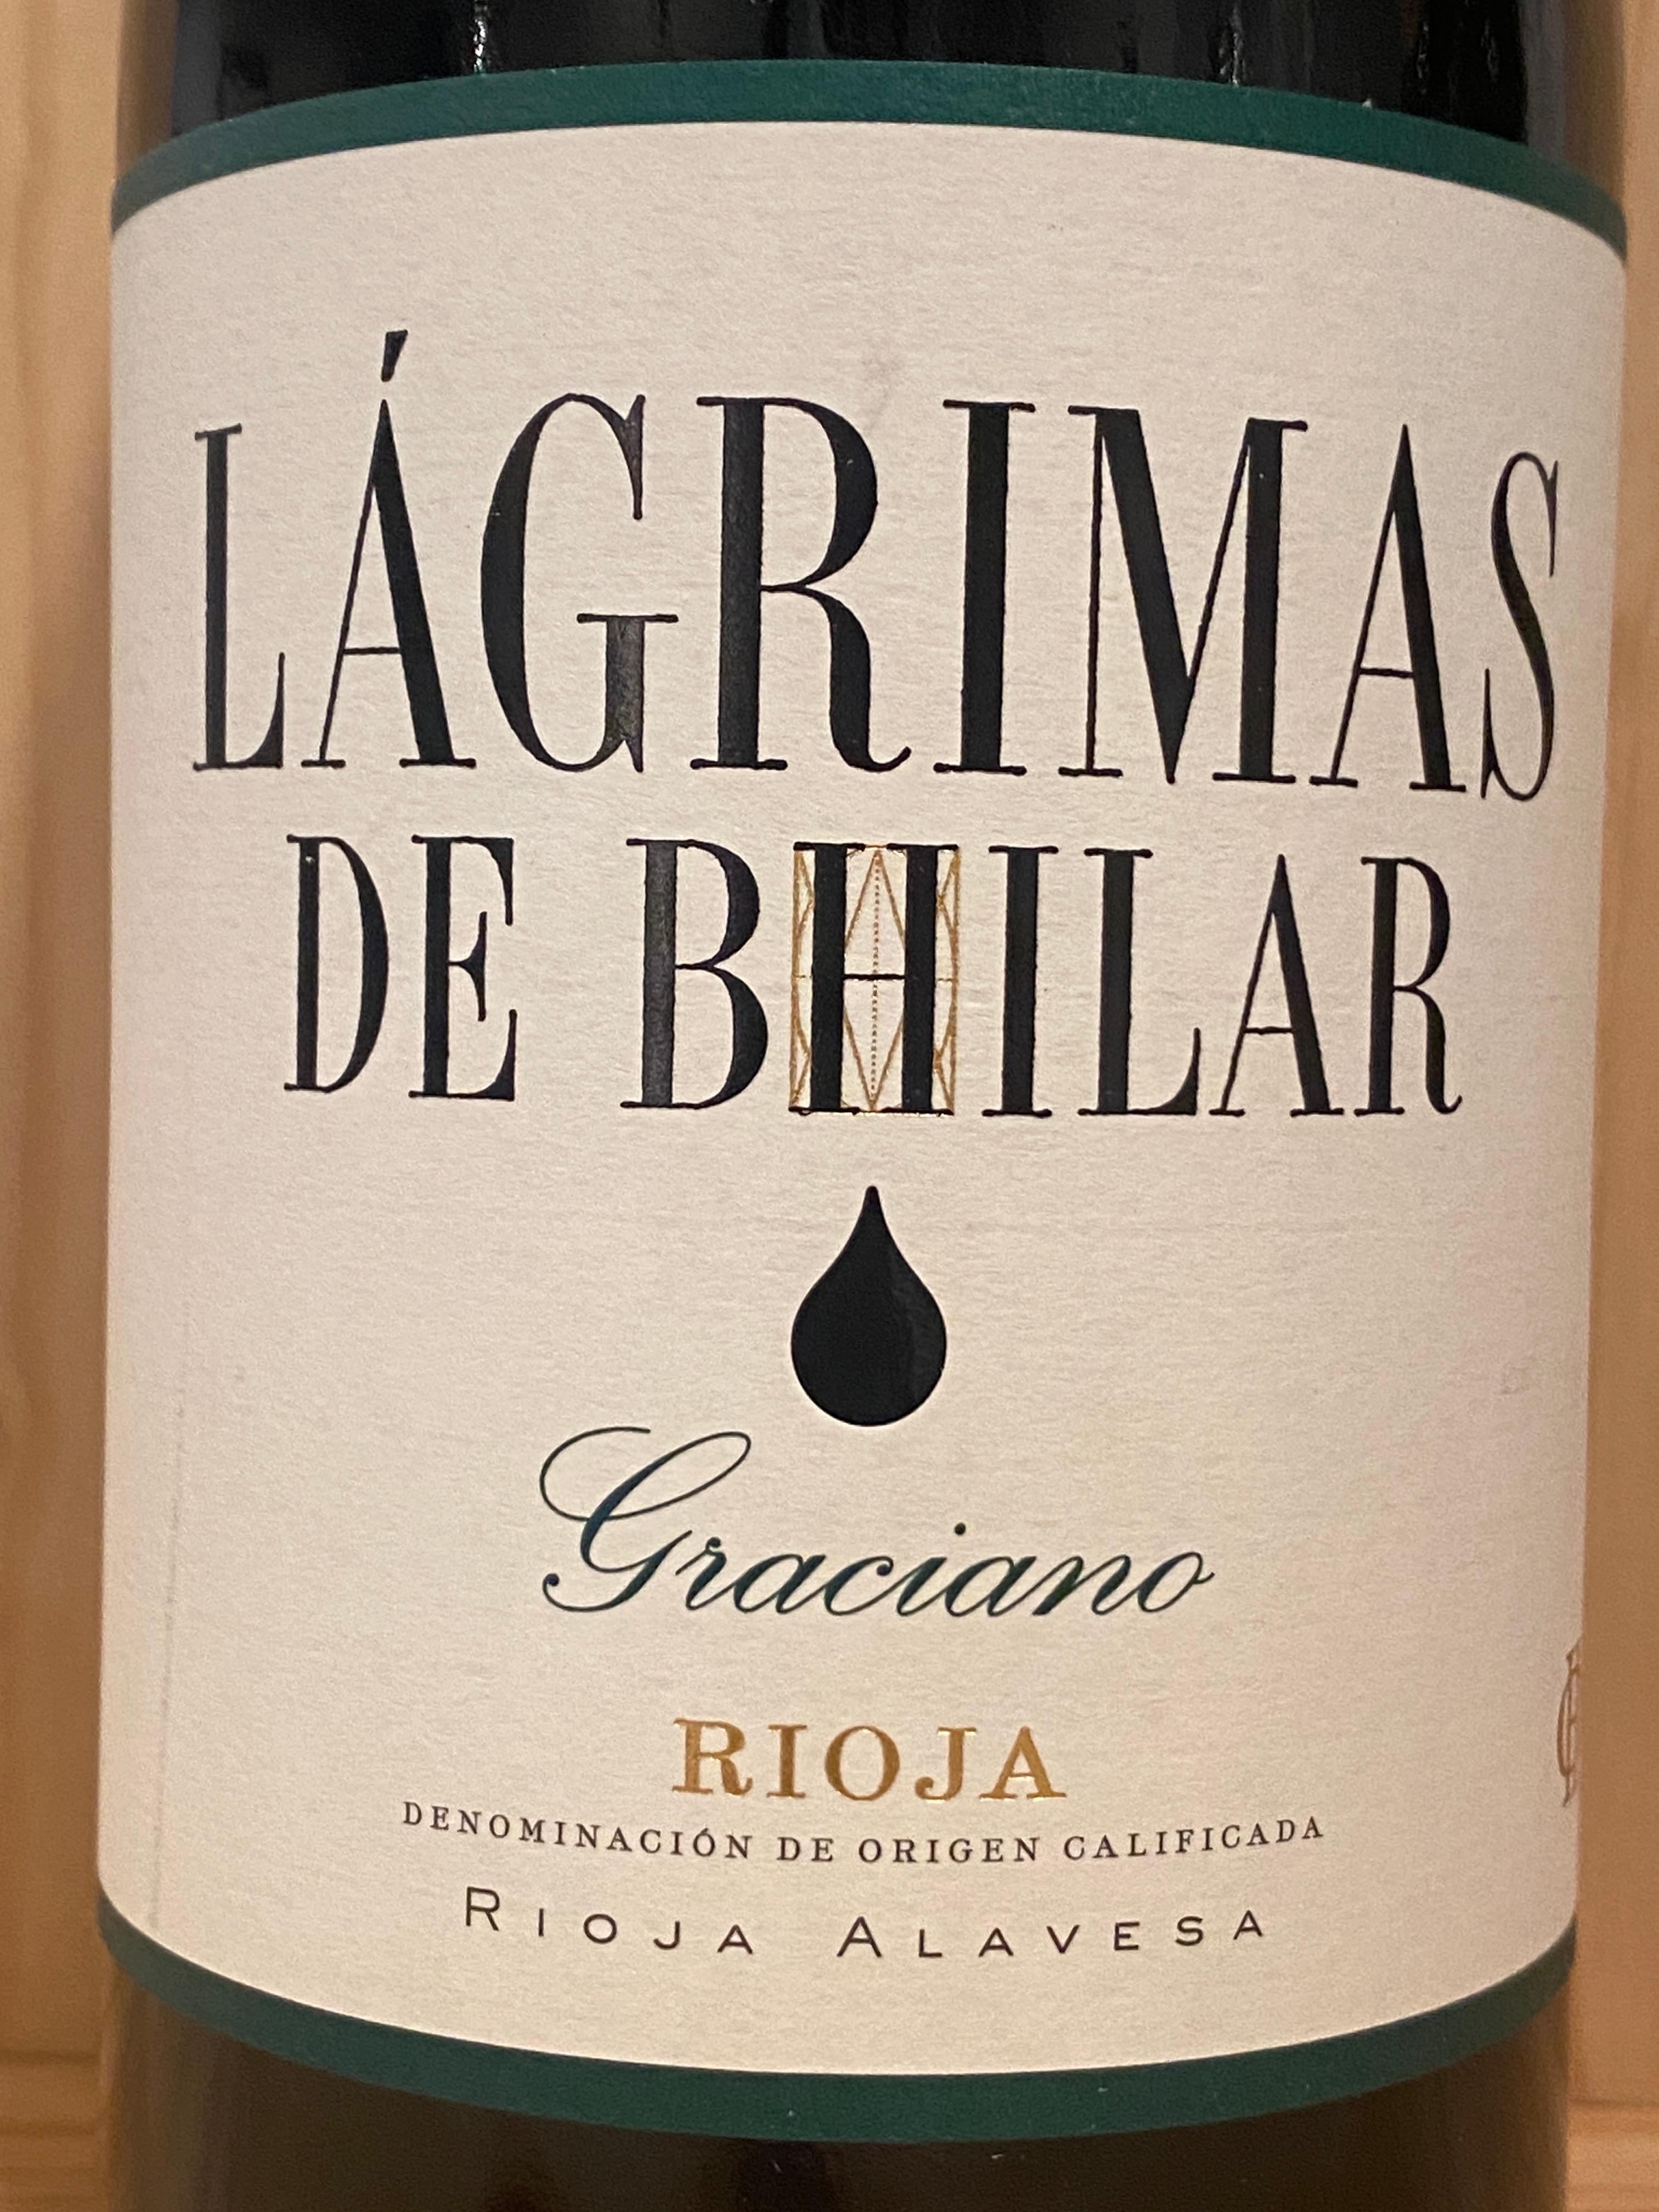 Lágrimas de Bhilar Graciano 2021: Rioja Alavesa, Spain